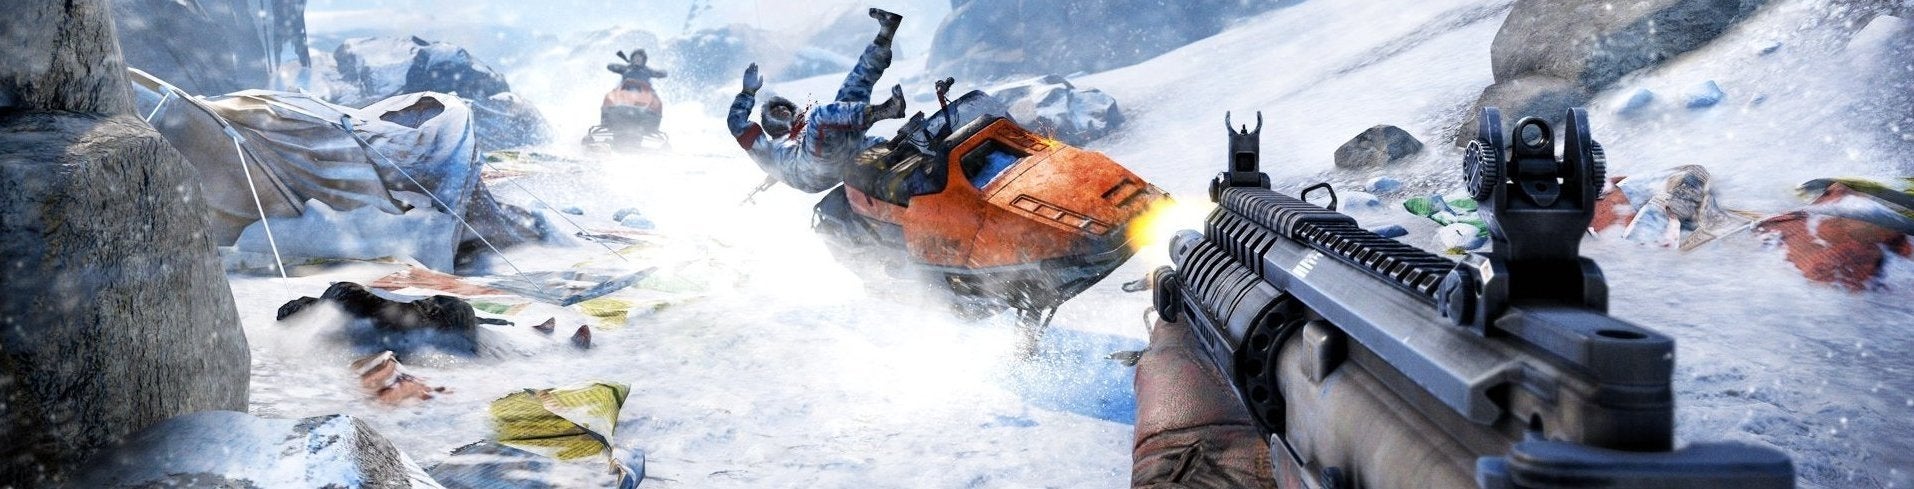 Obrazki dla Digital Foundry kontra Far Cry 4 na PS4